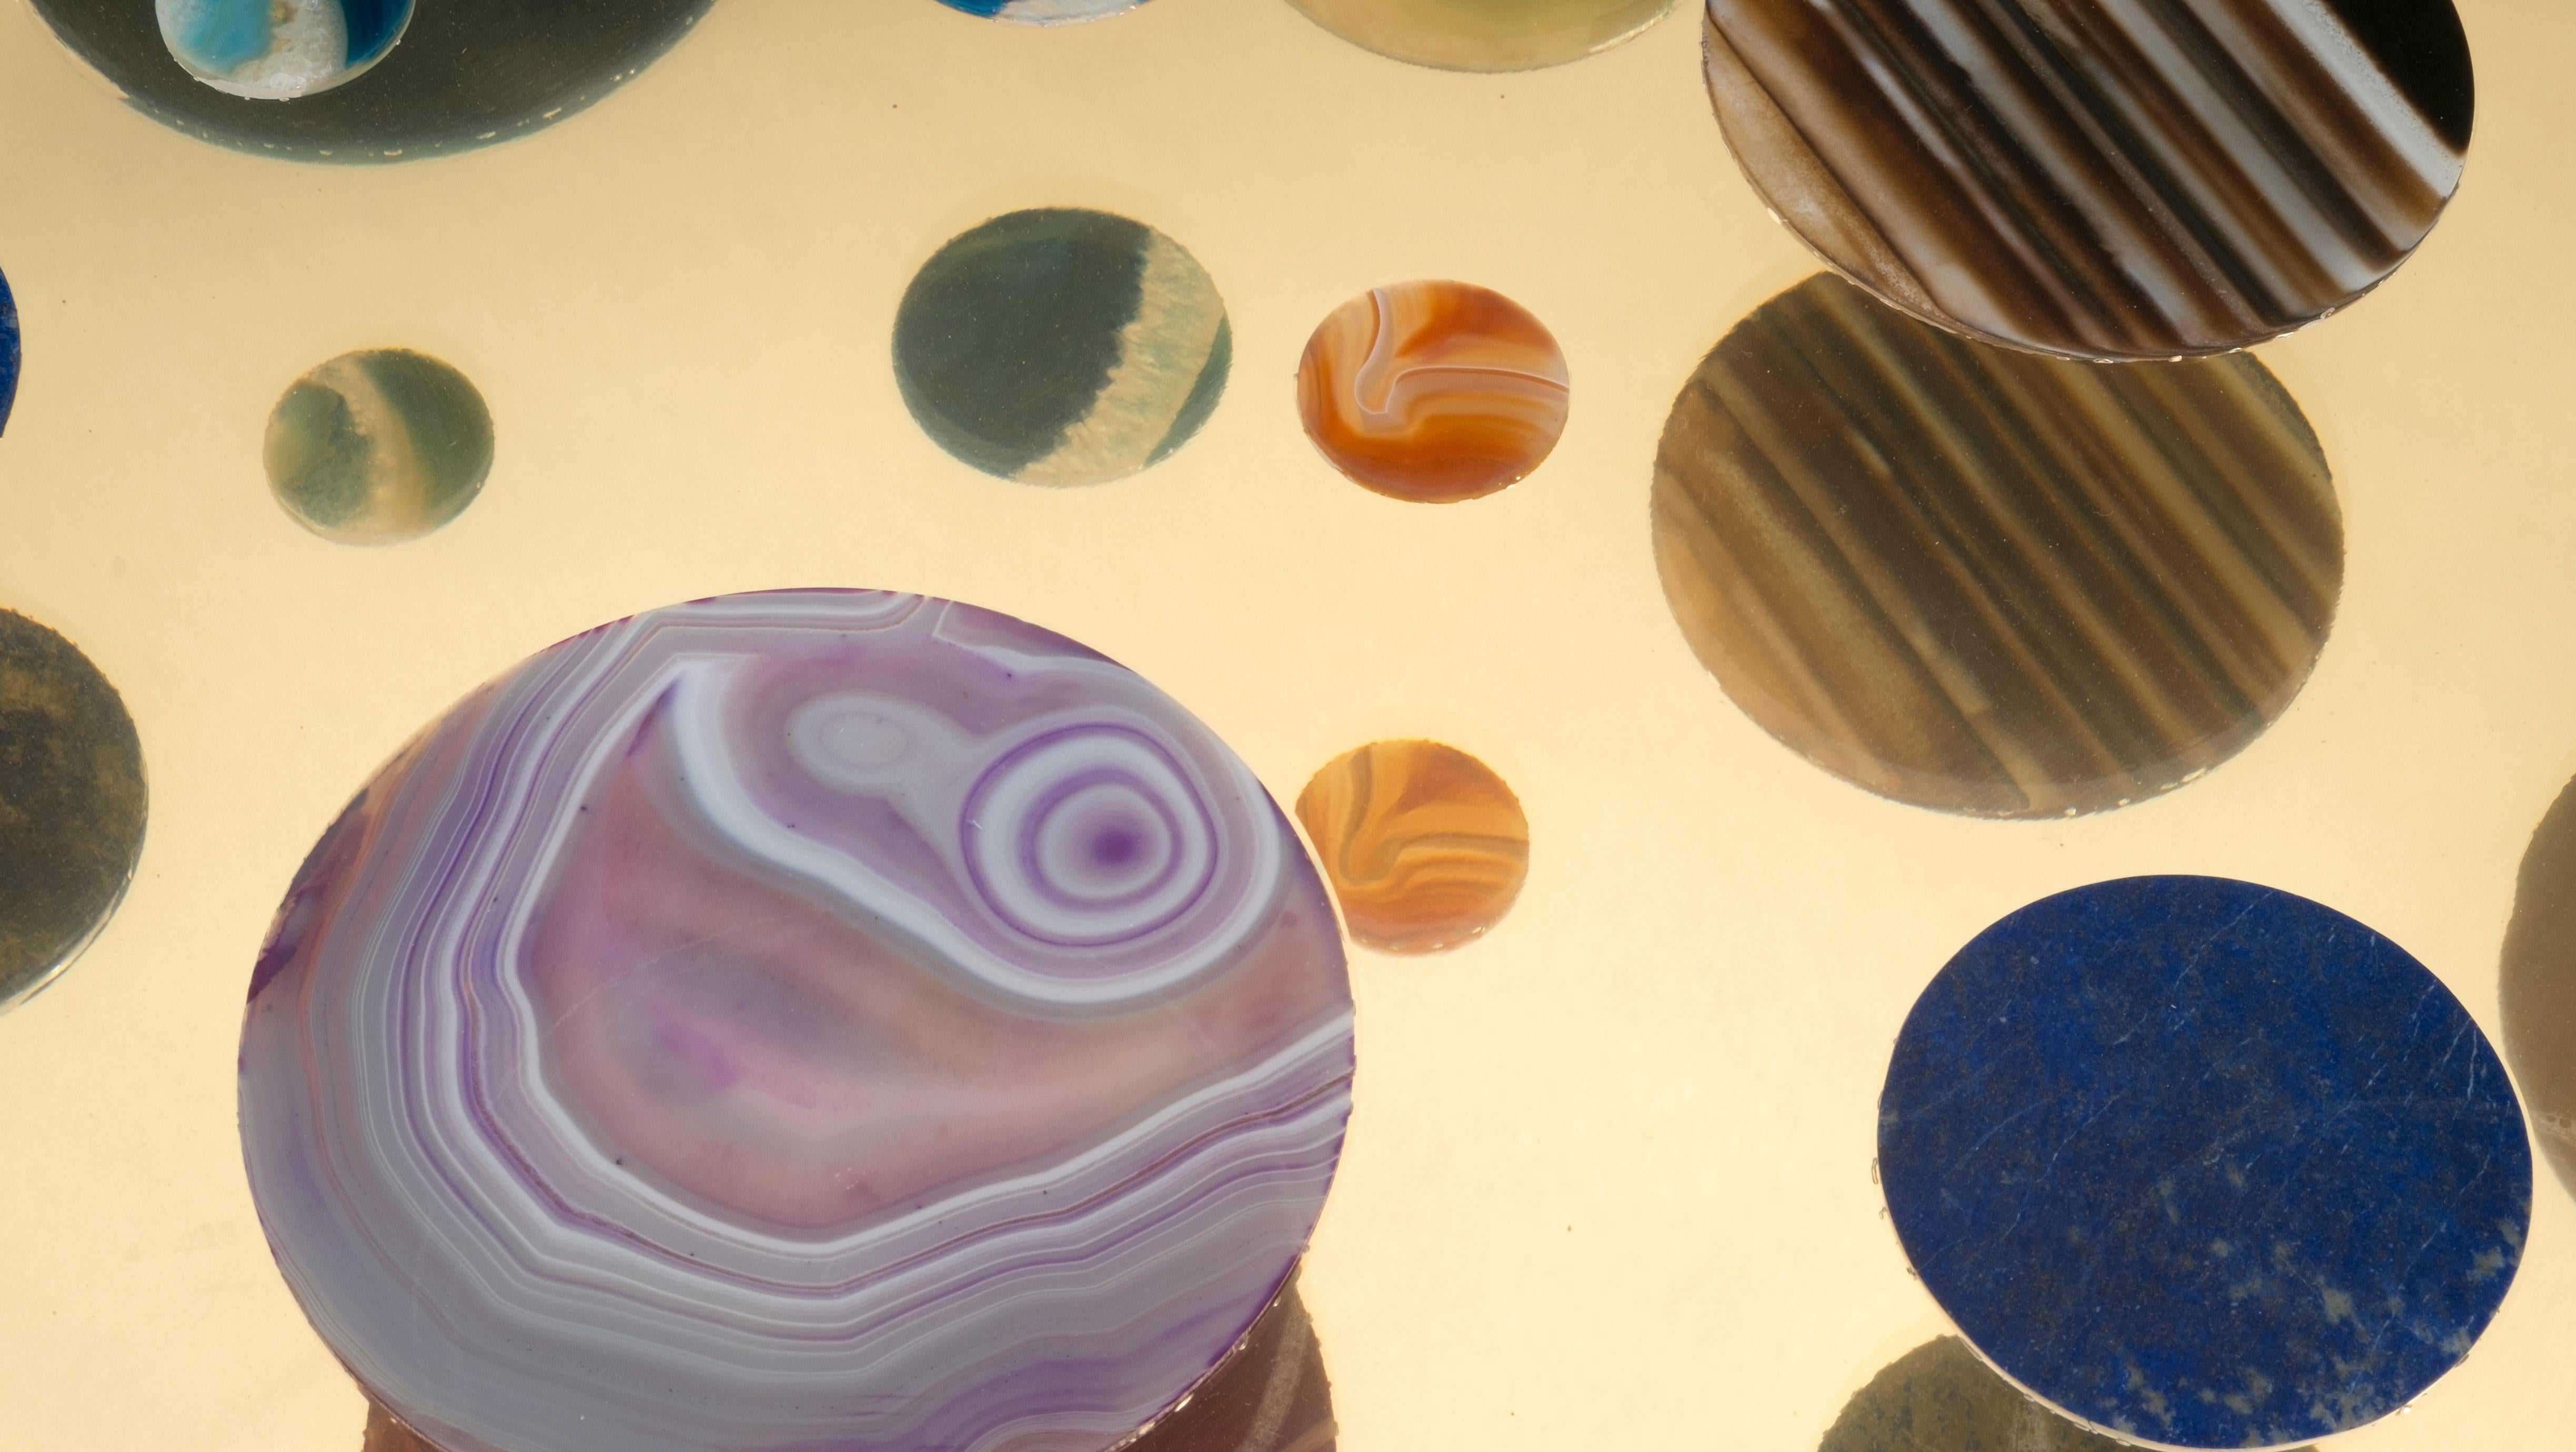 Couchtisch Modell Cosmos aus transparentem Plexiglas mit Achatscheiben in verschiedenen Farben und mit Messingbeinen, entworfen von Studio Superego für Superego Editions.

Superego editions wurde 2006 gegründet und führt eine konstante